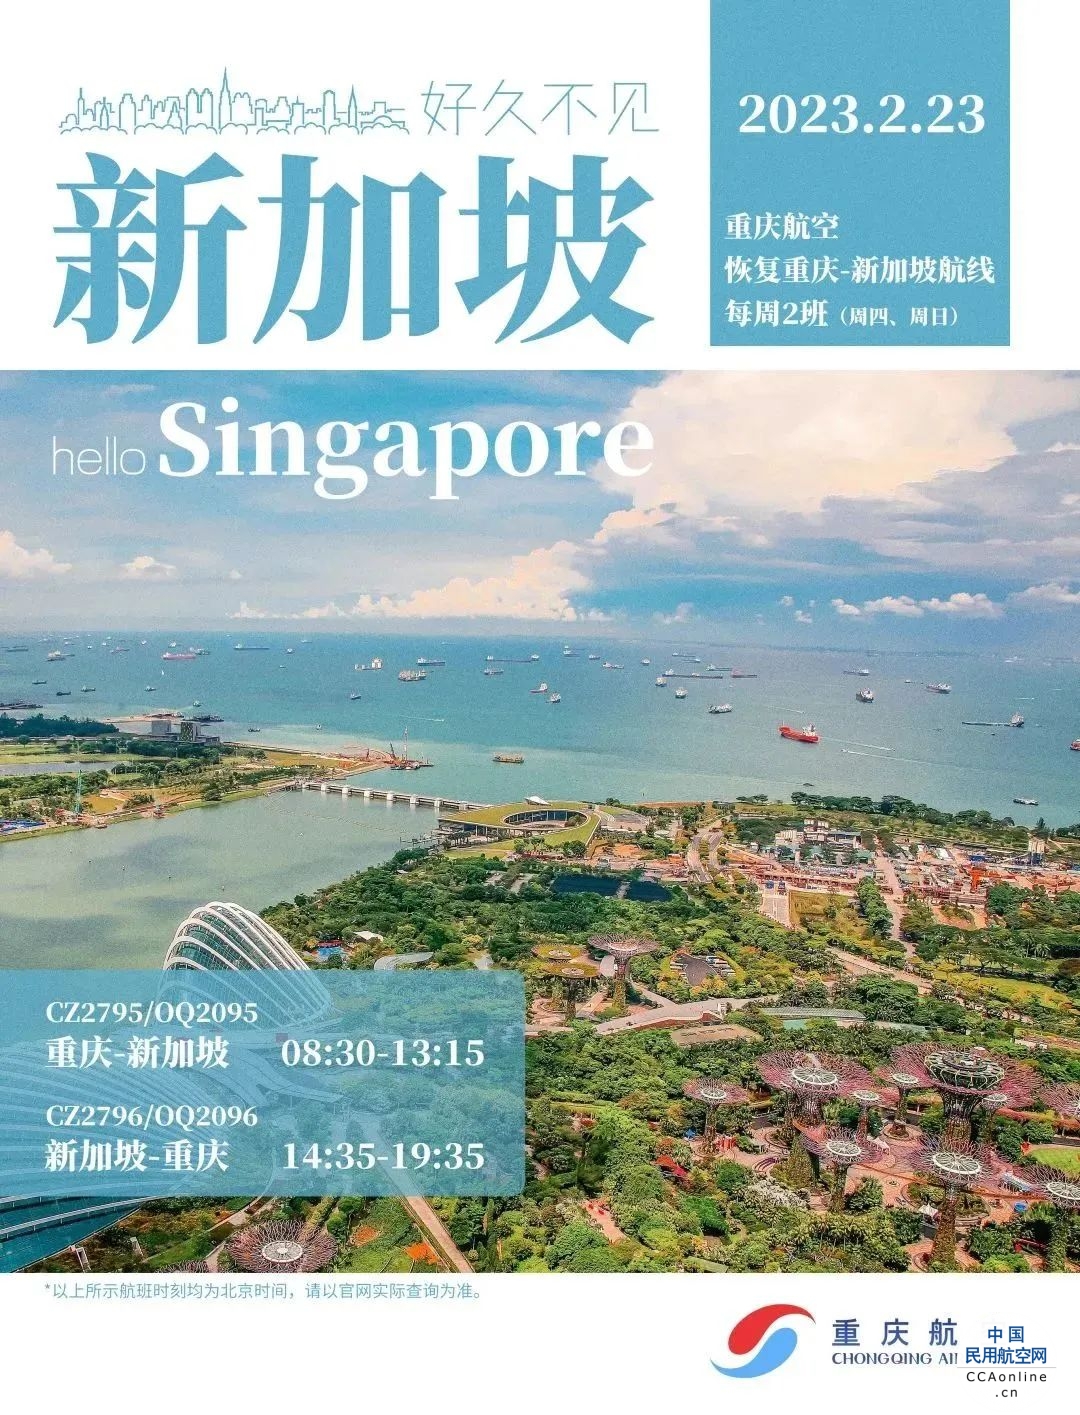 重庆航空重庆-新加坡国际航线顺利复航